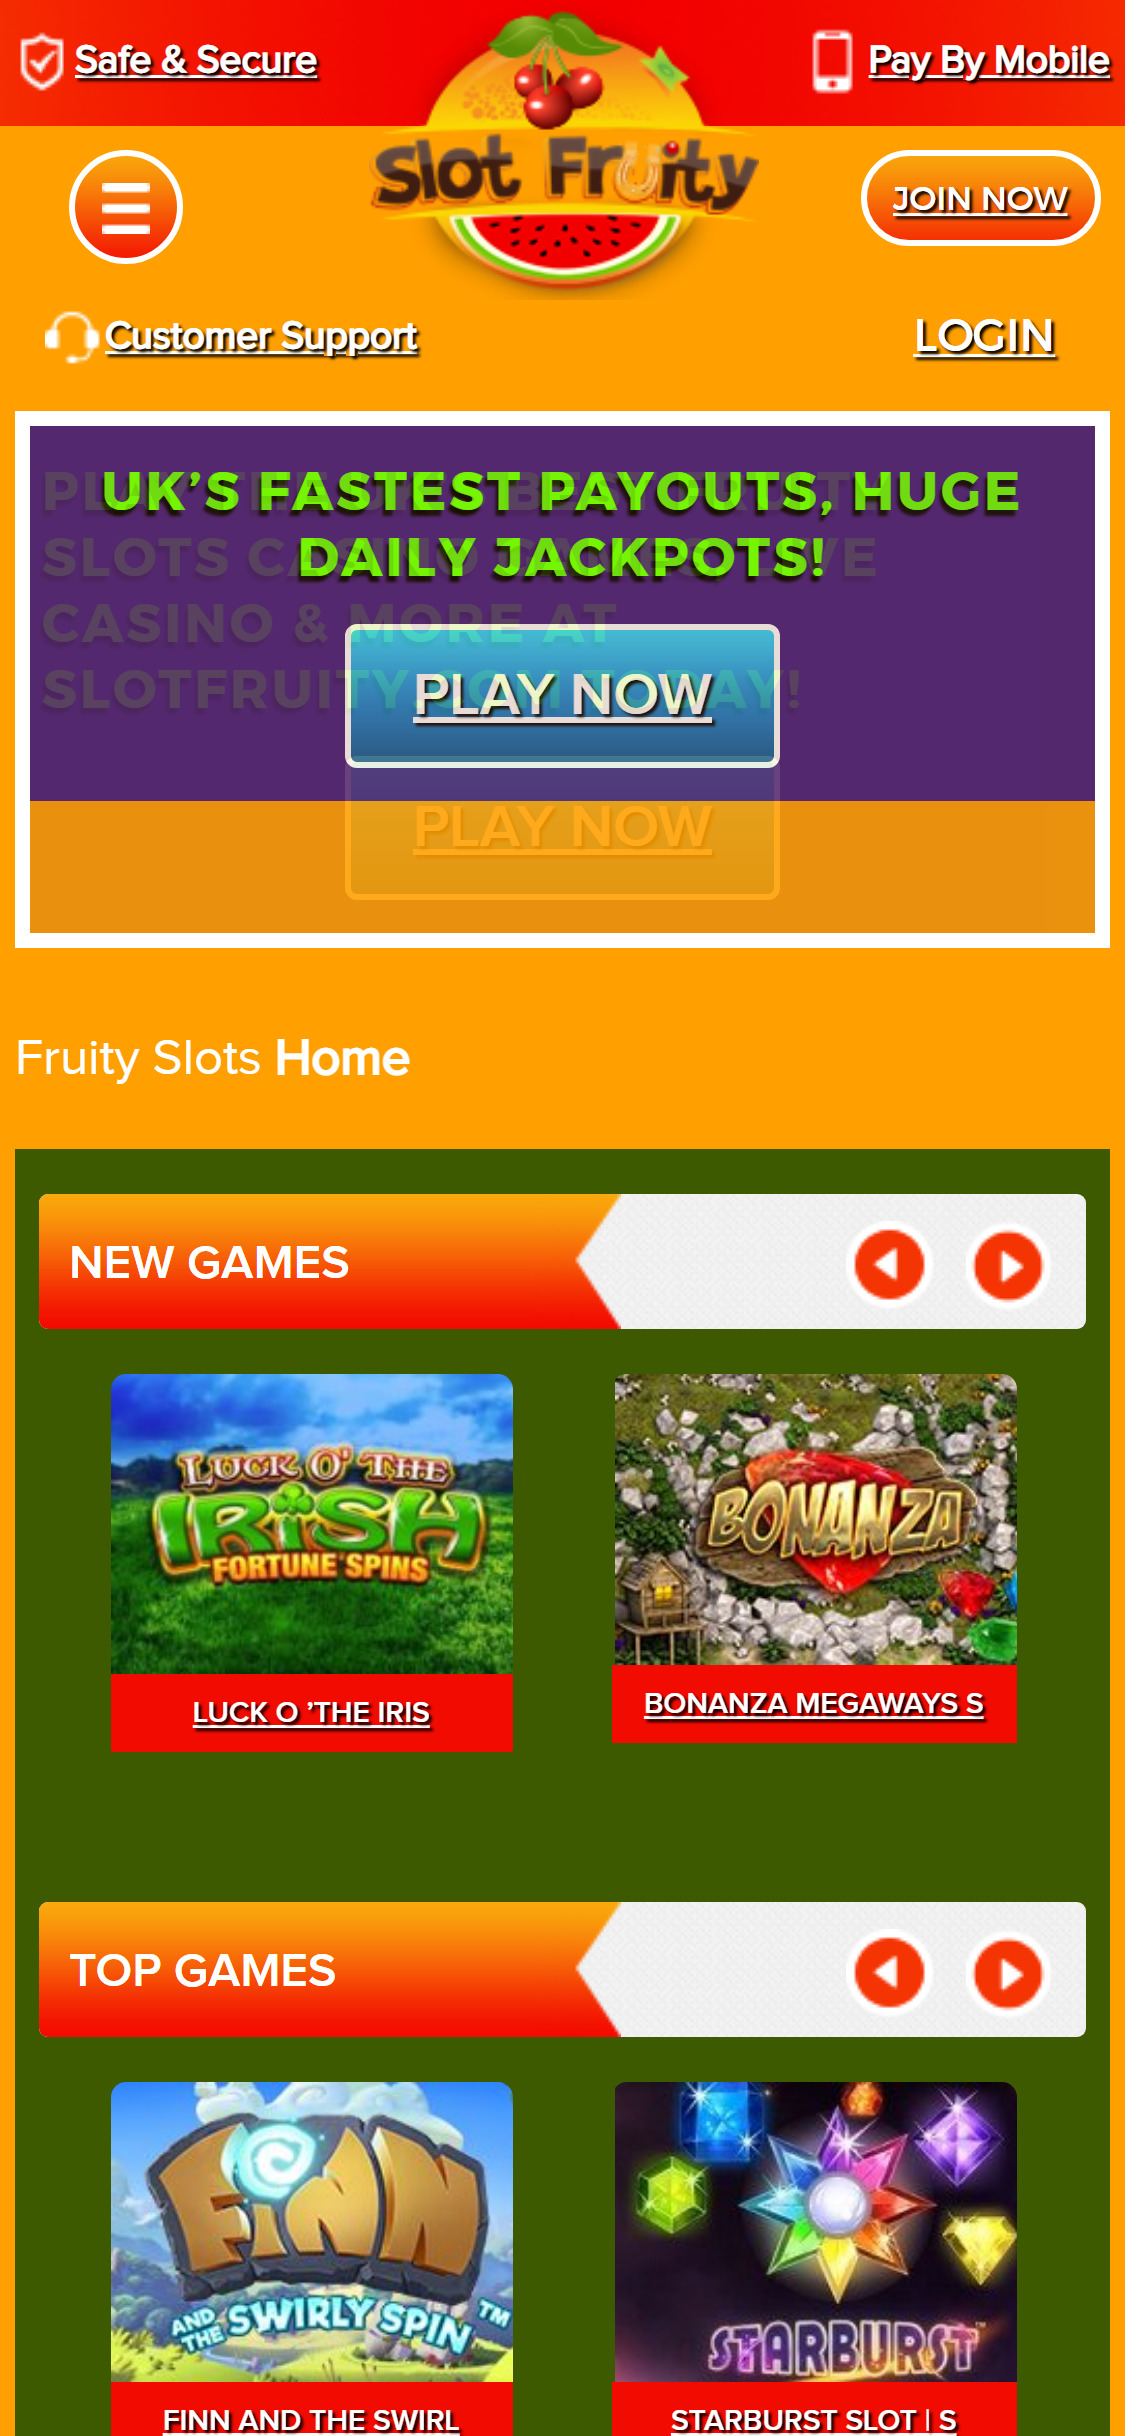 Slot Fruity Casino Mobile Review